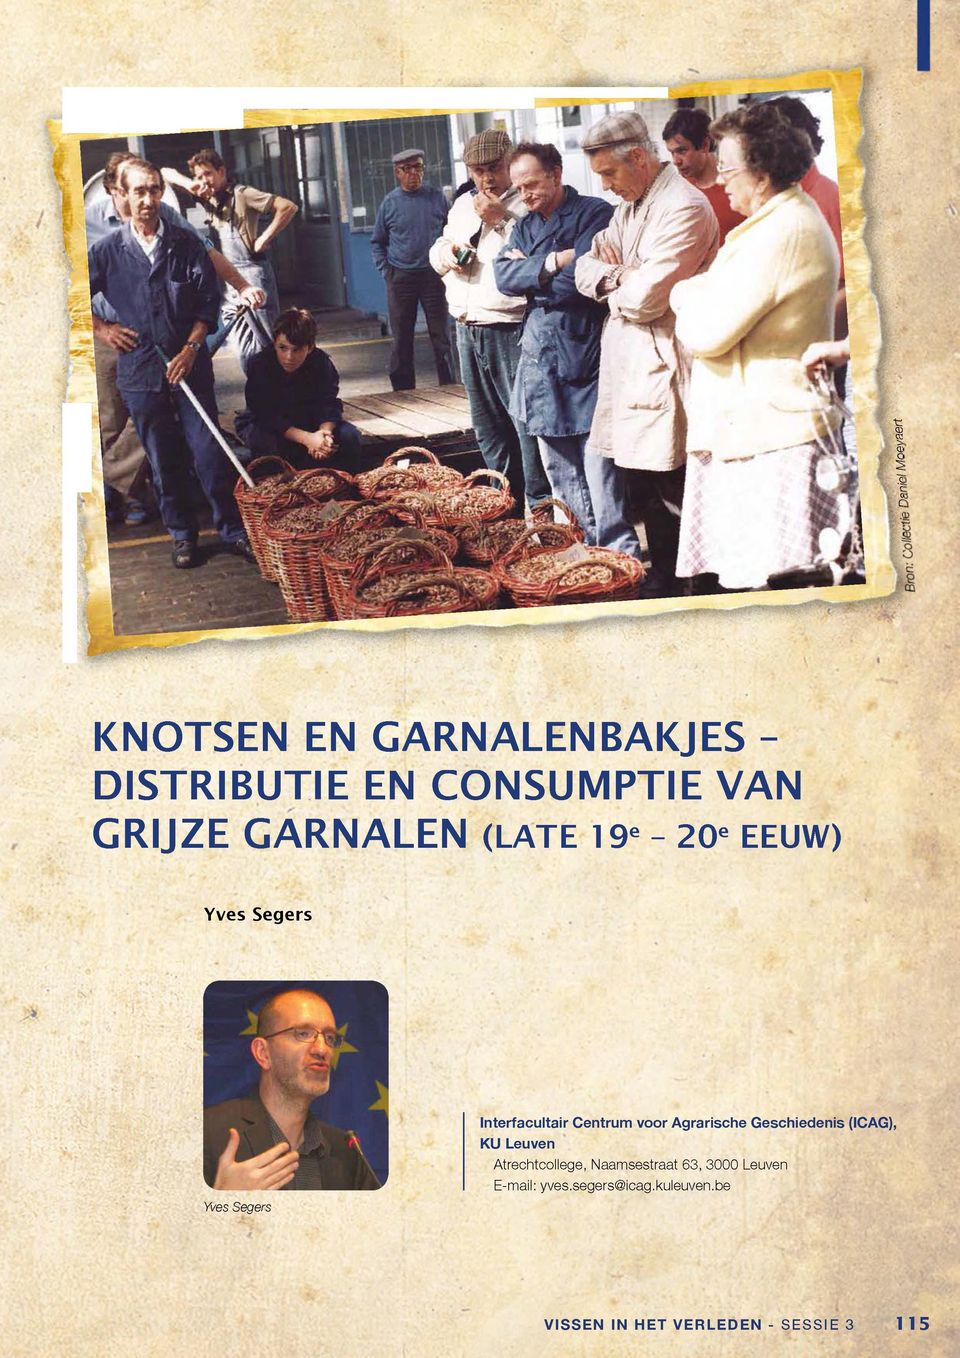 Geschiedenis (ICAG), KU Leuven Atrechtcollege, Naamsestraat 63, 3000 Leuven